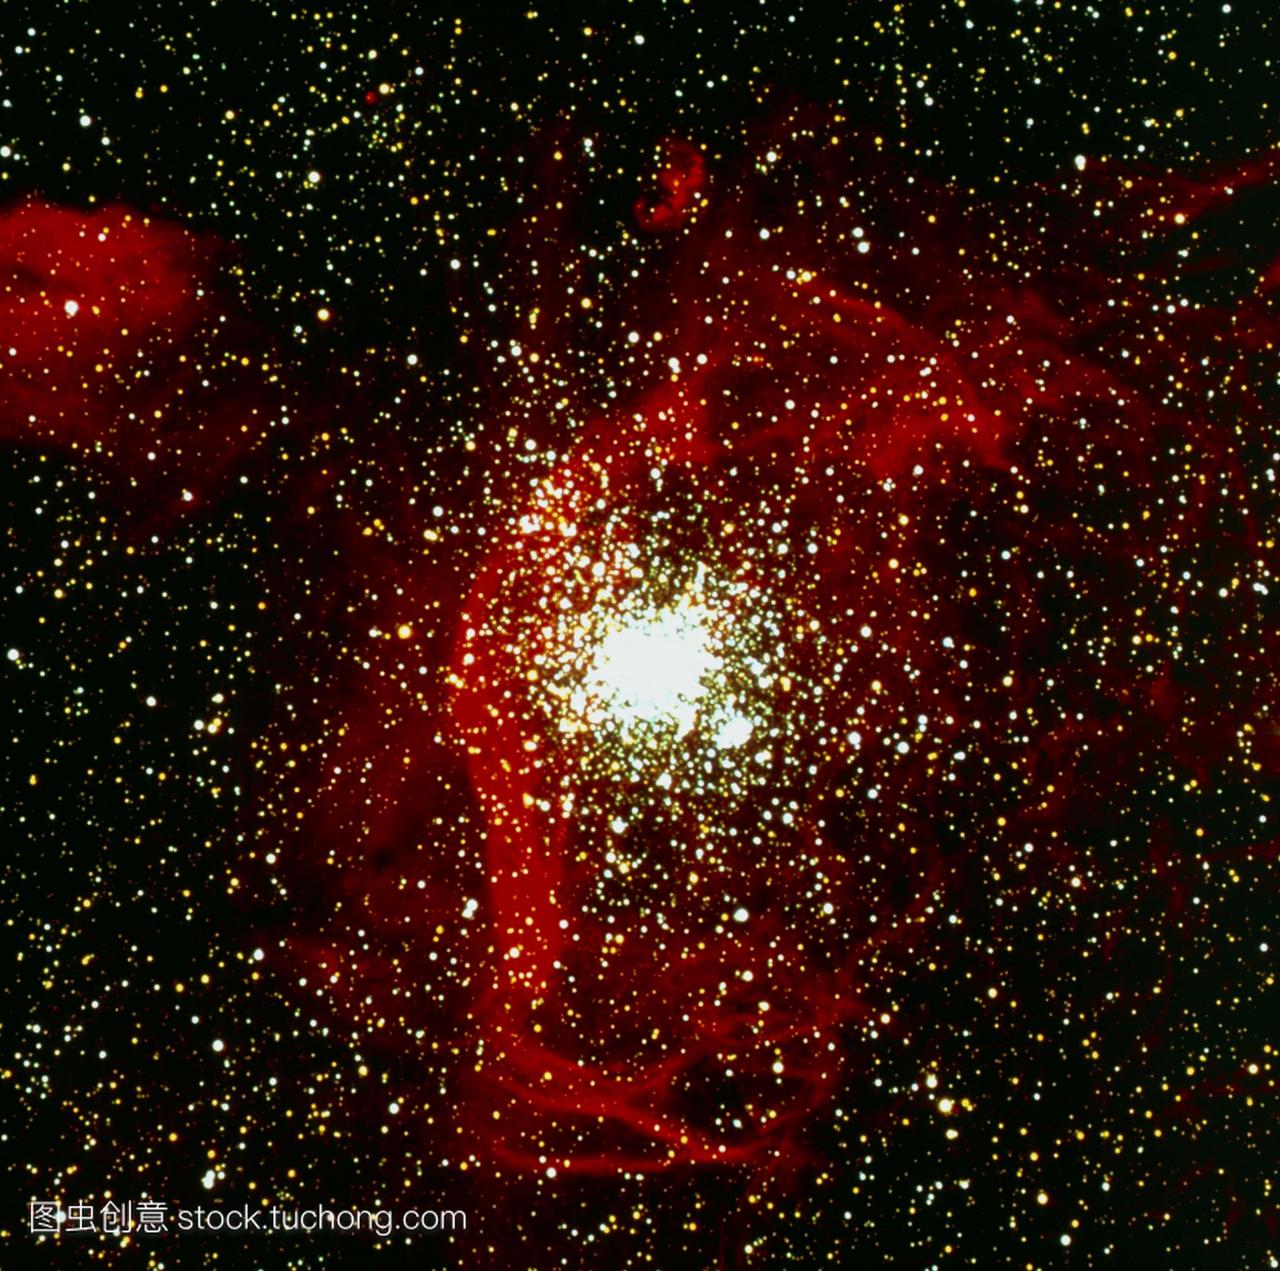 伦星云中双星群ngc1850的光学图像。主星团在